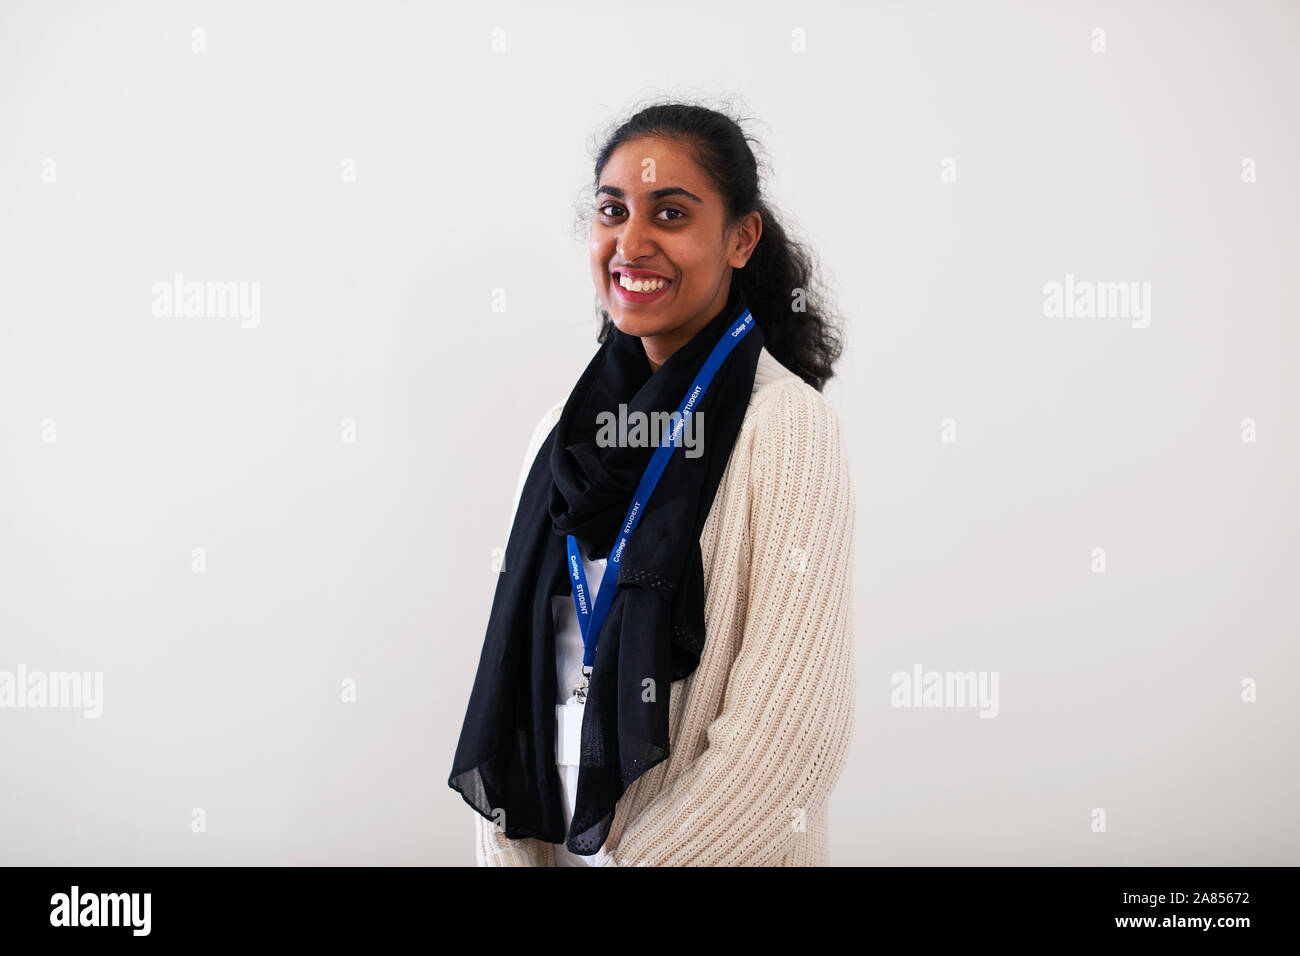 Confiant Portrait jeune femme indienne Banque D'Images